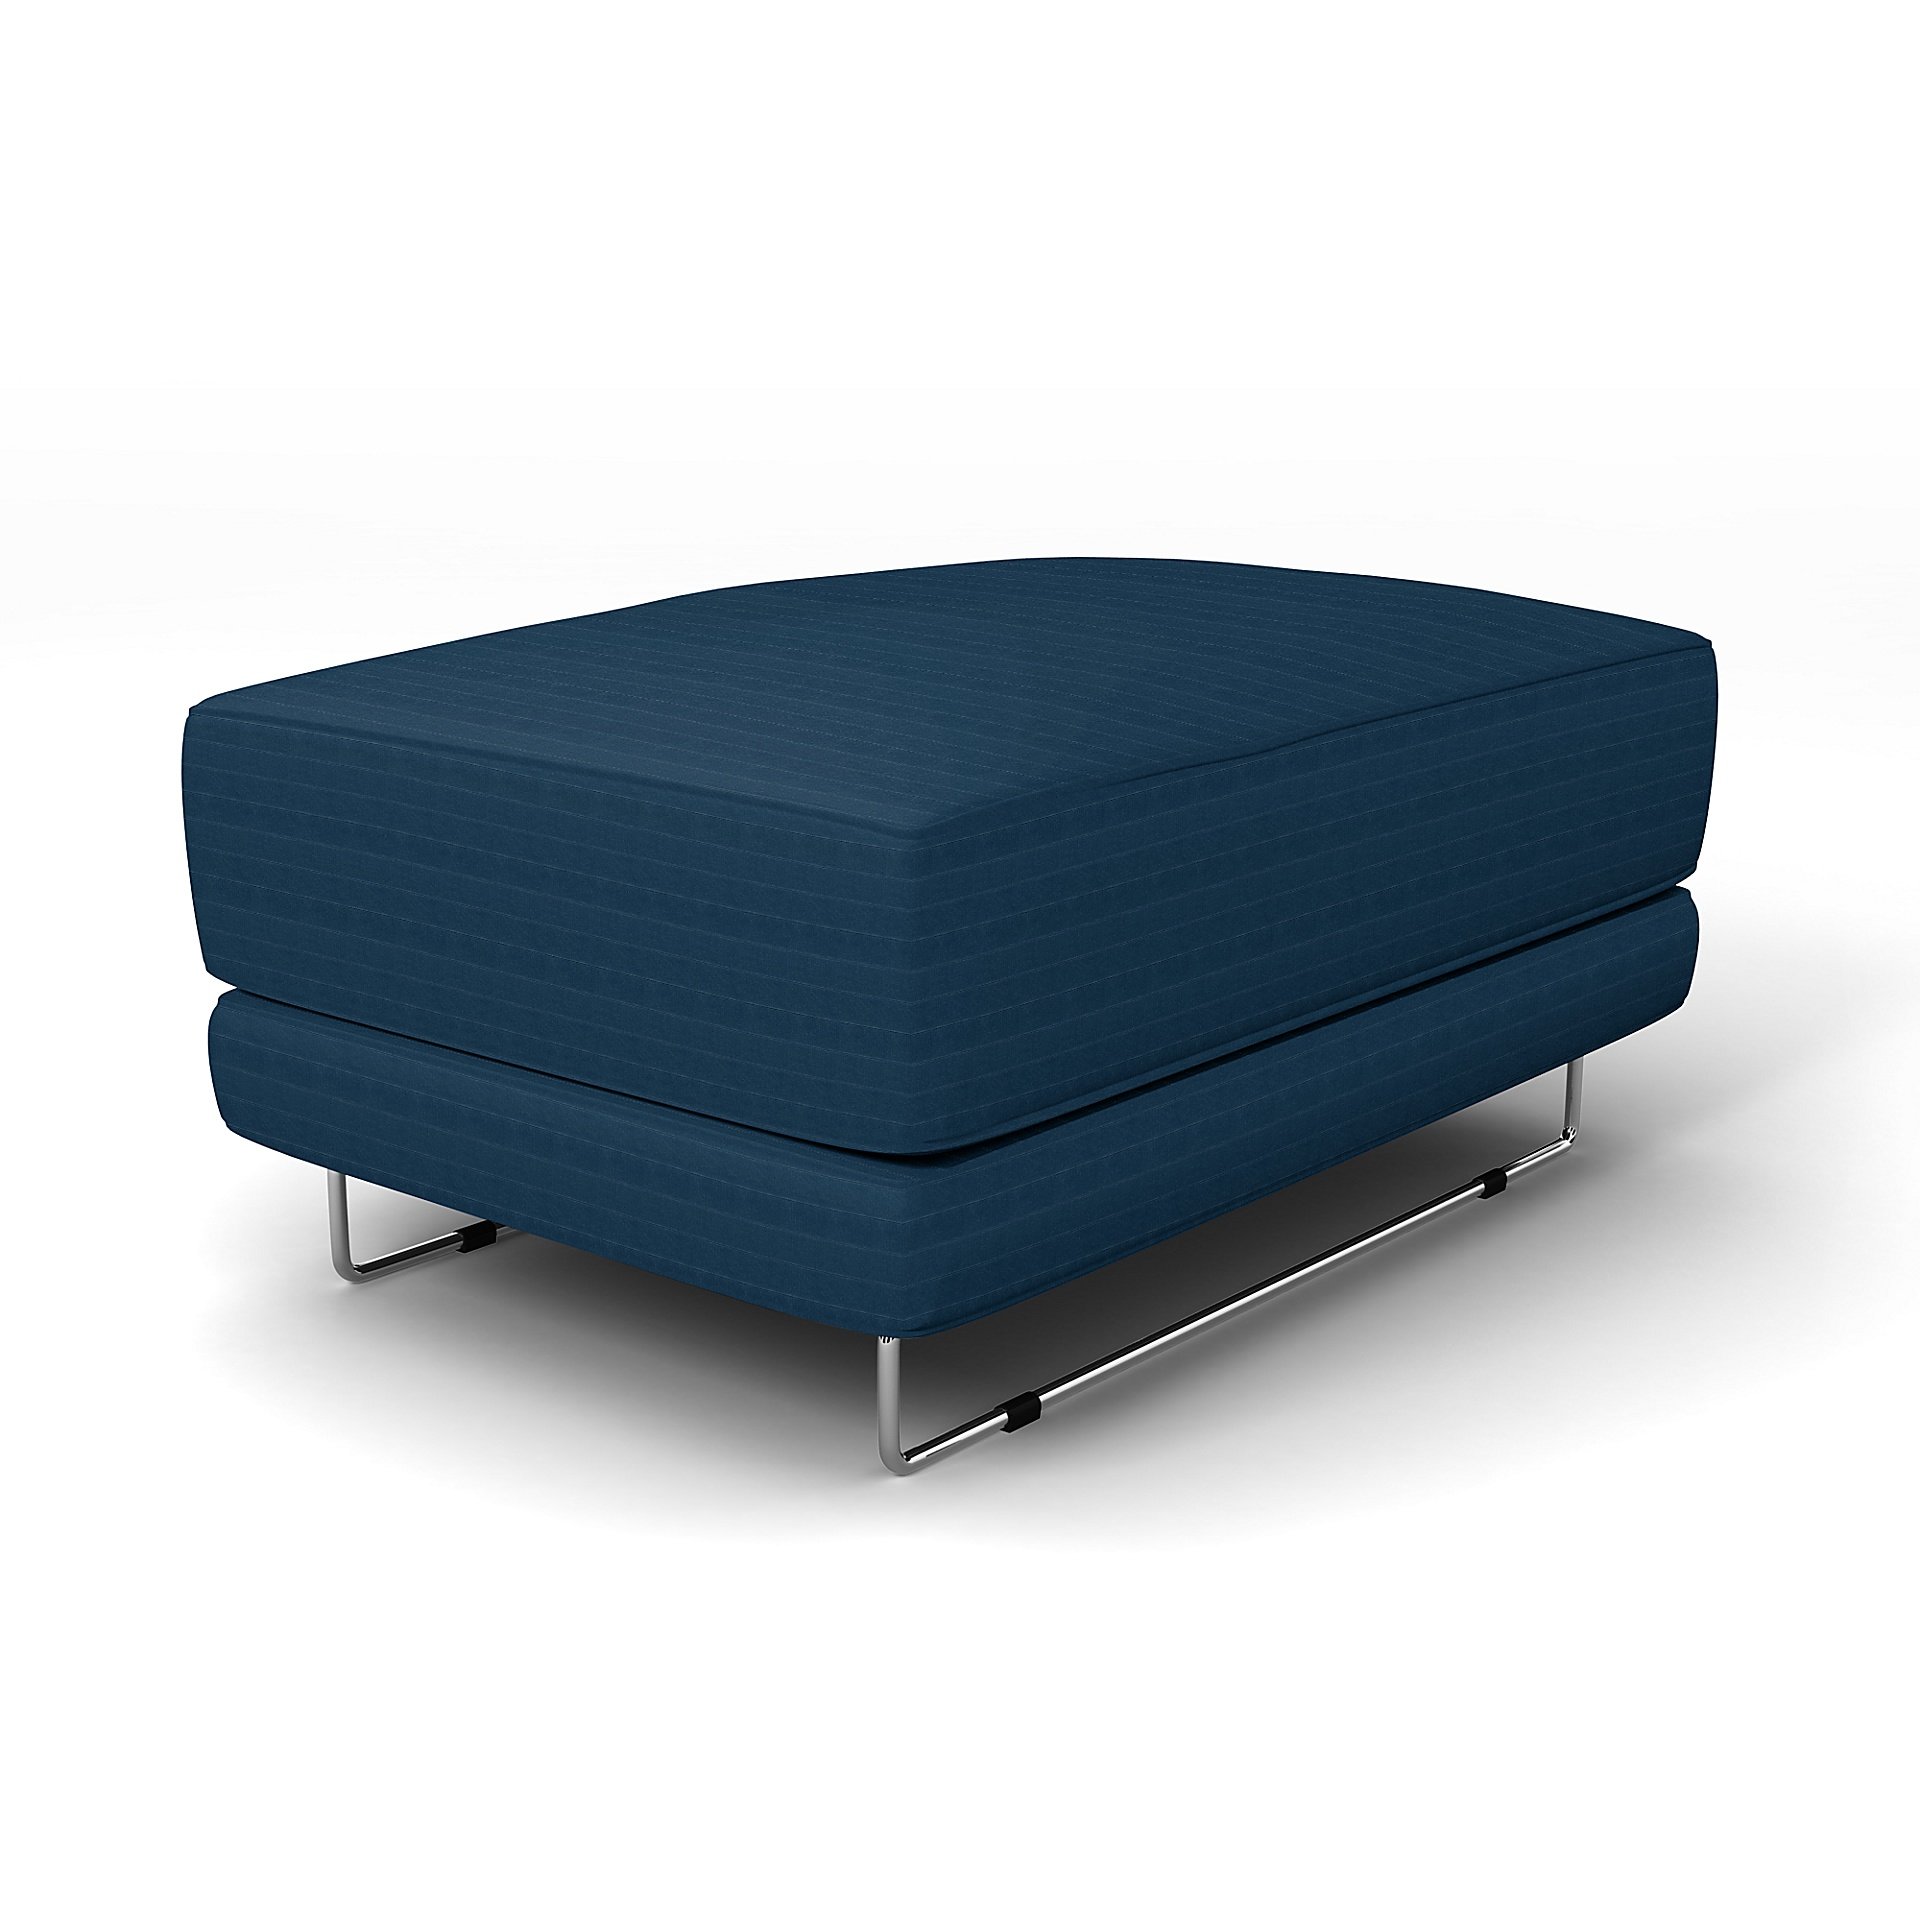 IKEA - Tylosand Footstool Cover, Denim Blue, Velvet - Bemz